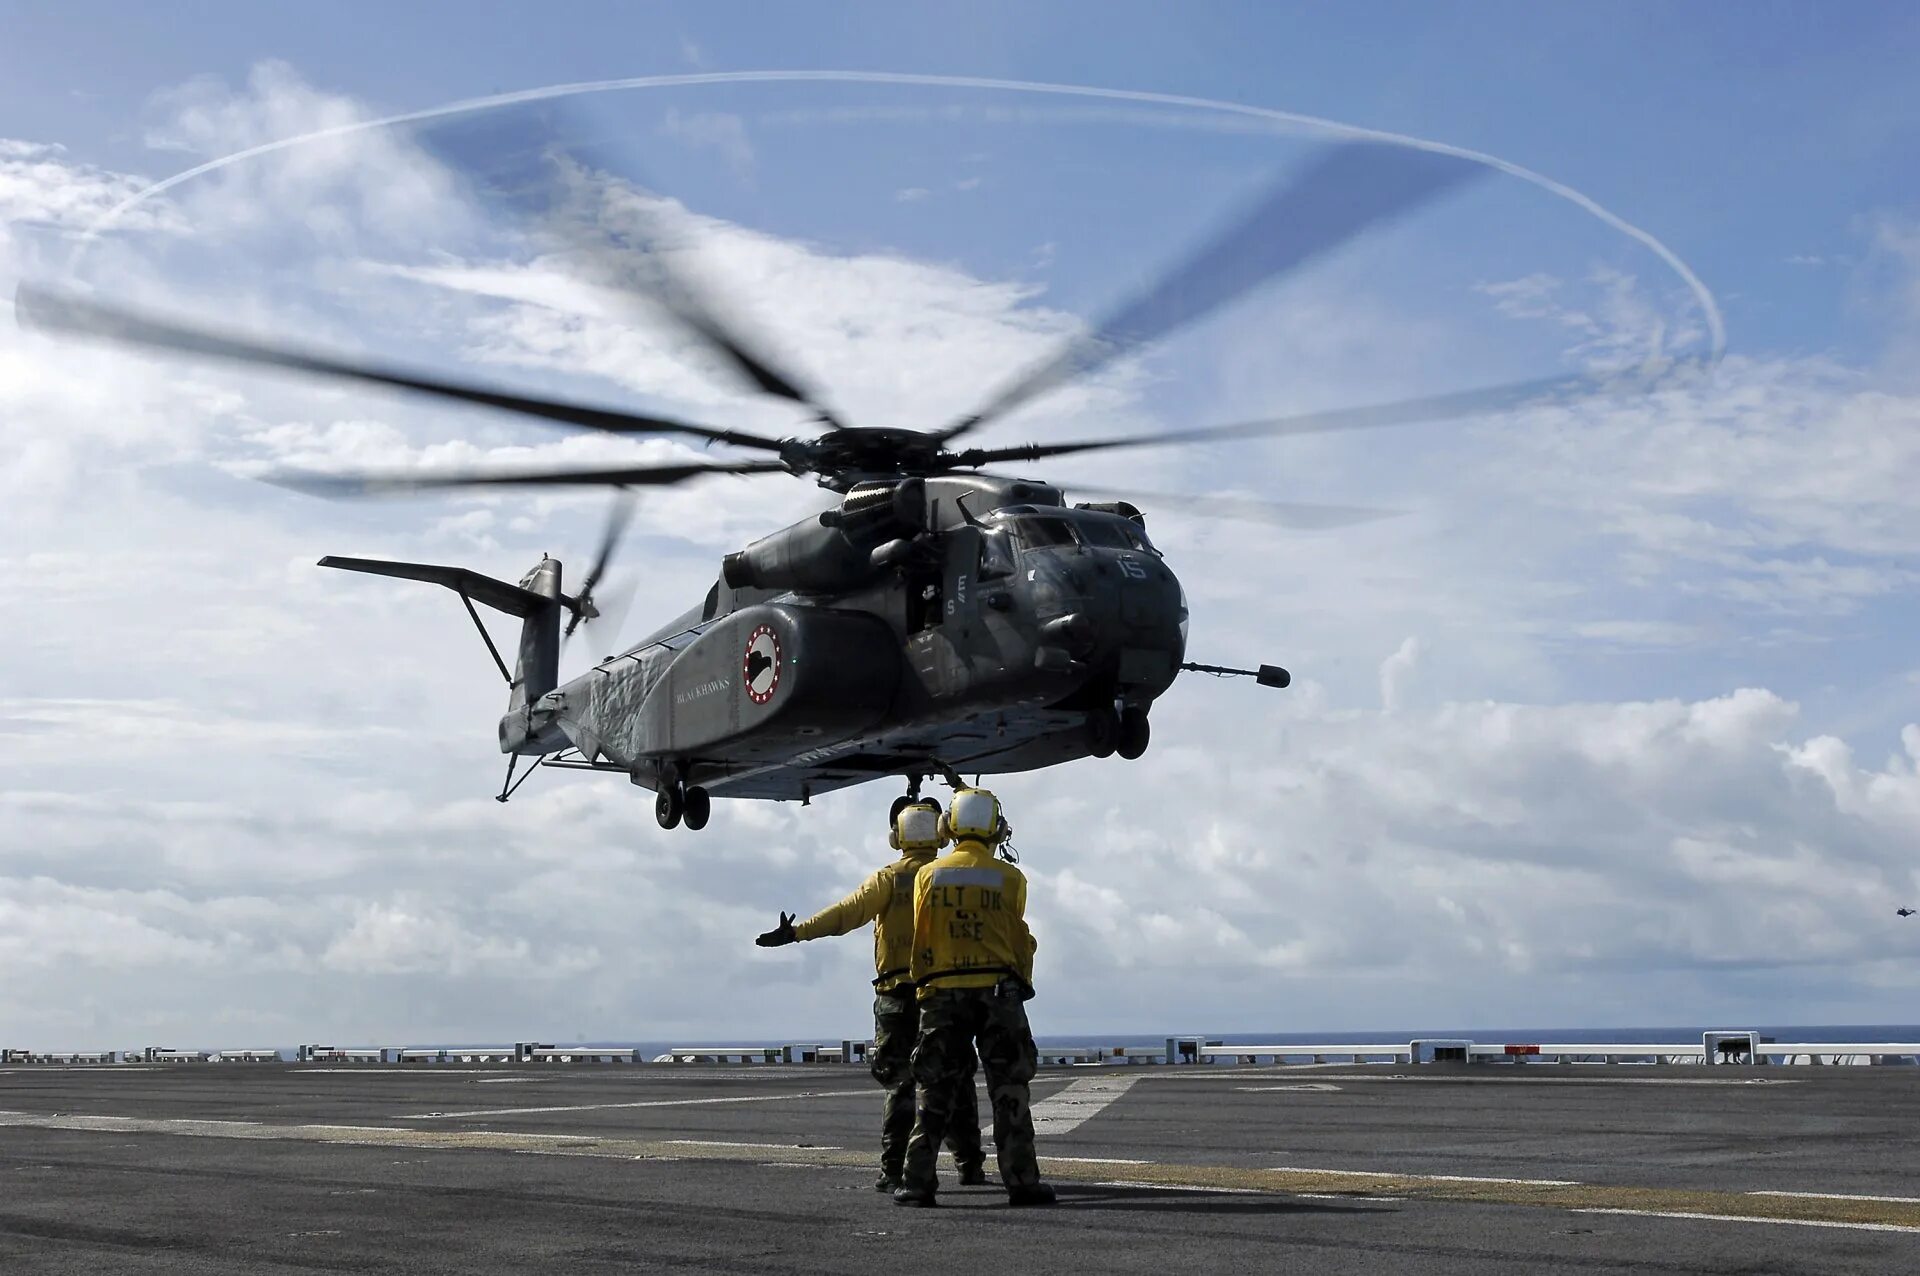 Вертолет самолет человек. Sikorsky Ch-53 Sea Stallion. Sikorsky MH-53 И ми 26. Hm15 вертолет. Военные самолеты и вертолеты.